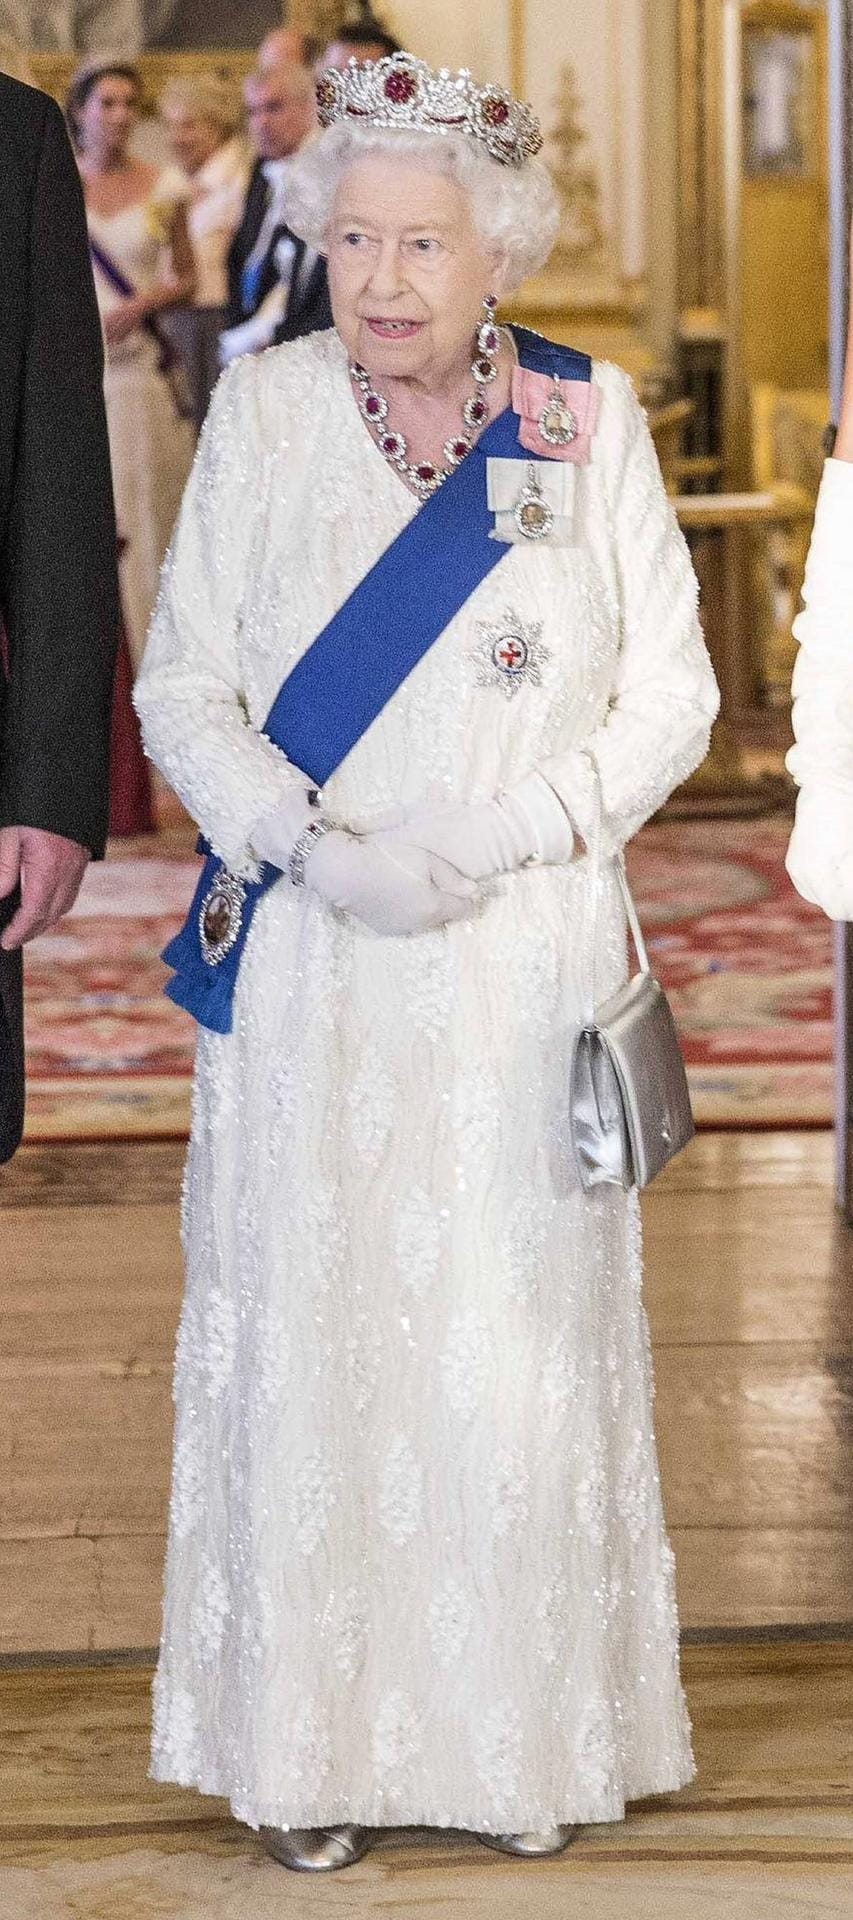 Queen Elisabeth im Partnerlook mit Camilla: Genauso wie ihre Schwiegertochter trägt die 93-Jährige vor dem Staatsbankett eine lange helle Robe und ein auffälliges Diadem in den gleichen Farben wie ihre Kette.